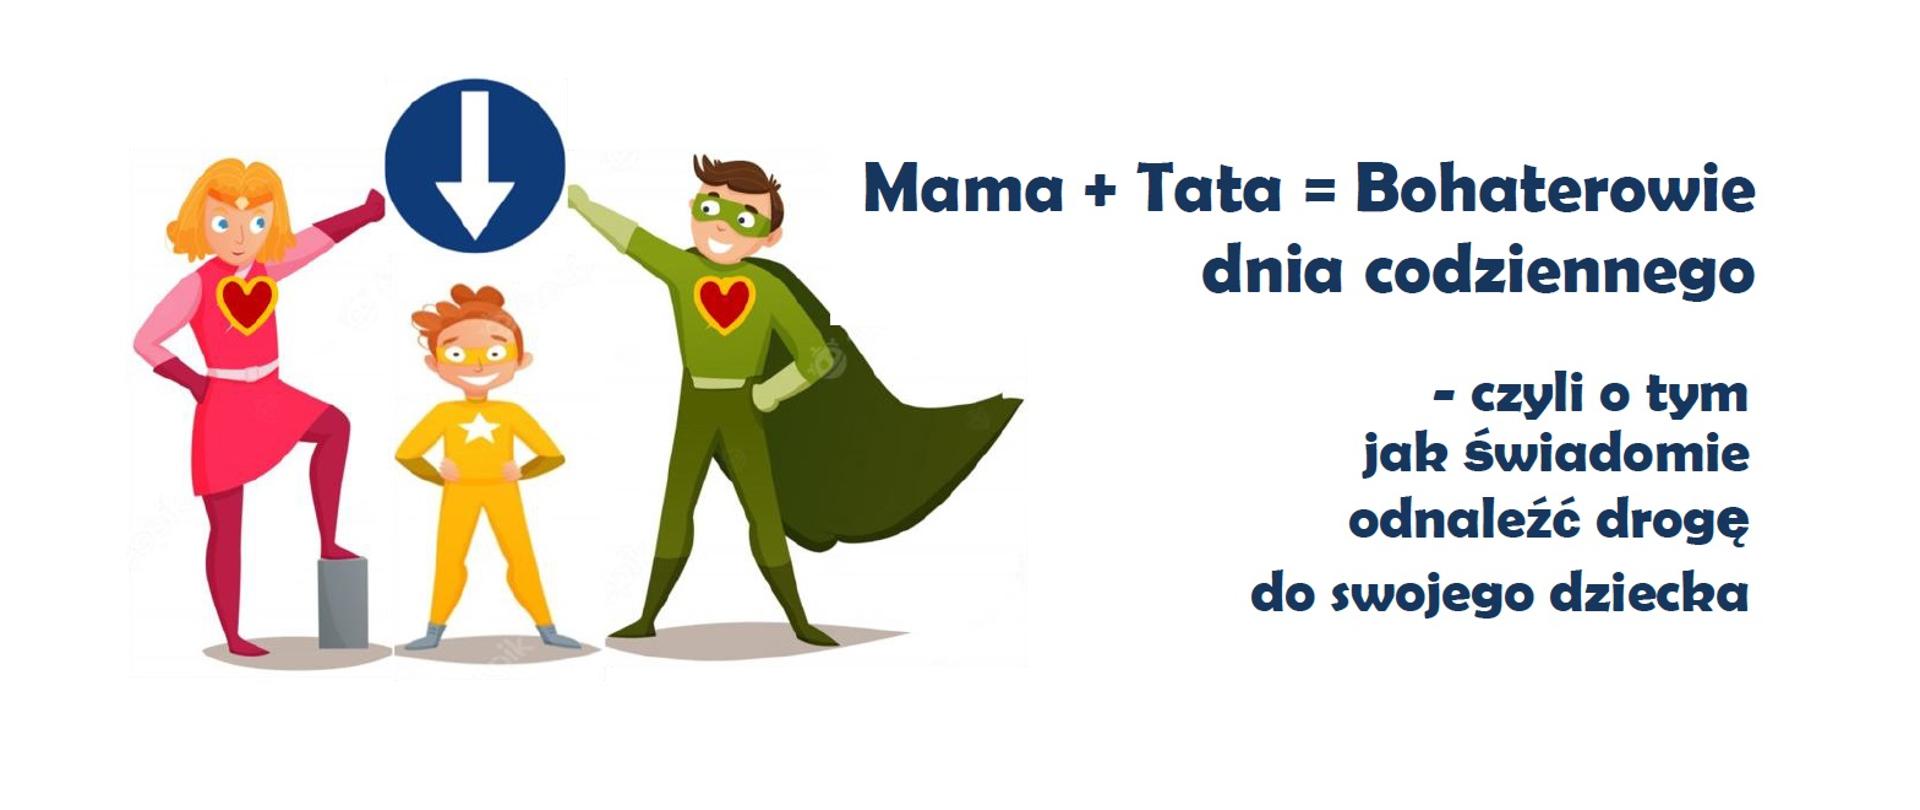 Mama + Tata = Bohaterowie dnia codziennego - czyli o tym jak świadomie odnaleźć drogę do swojego dziecka